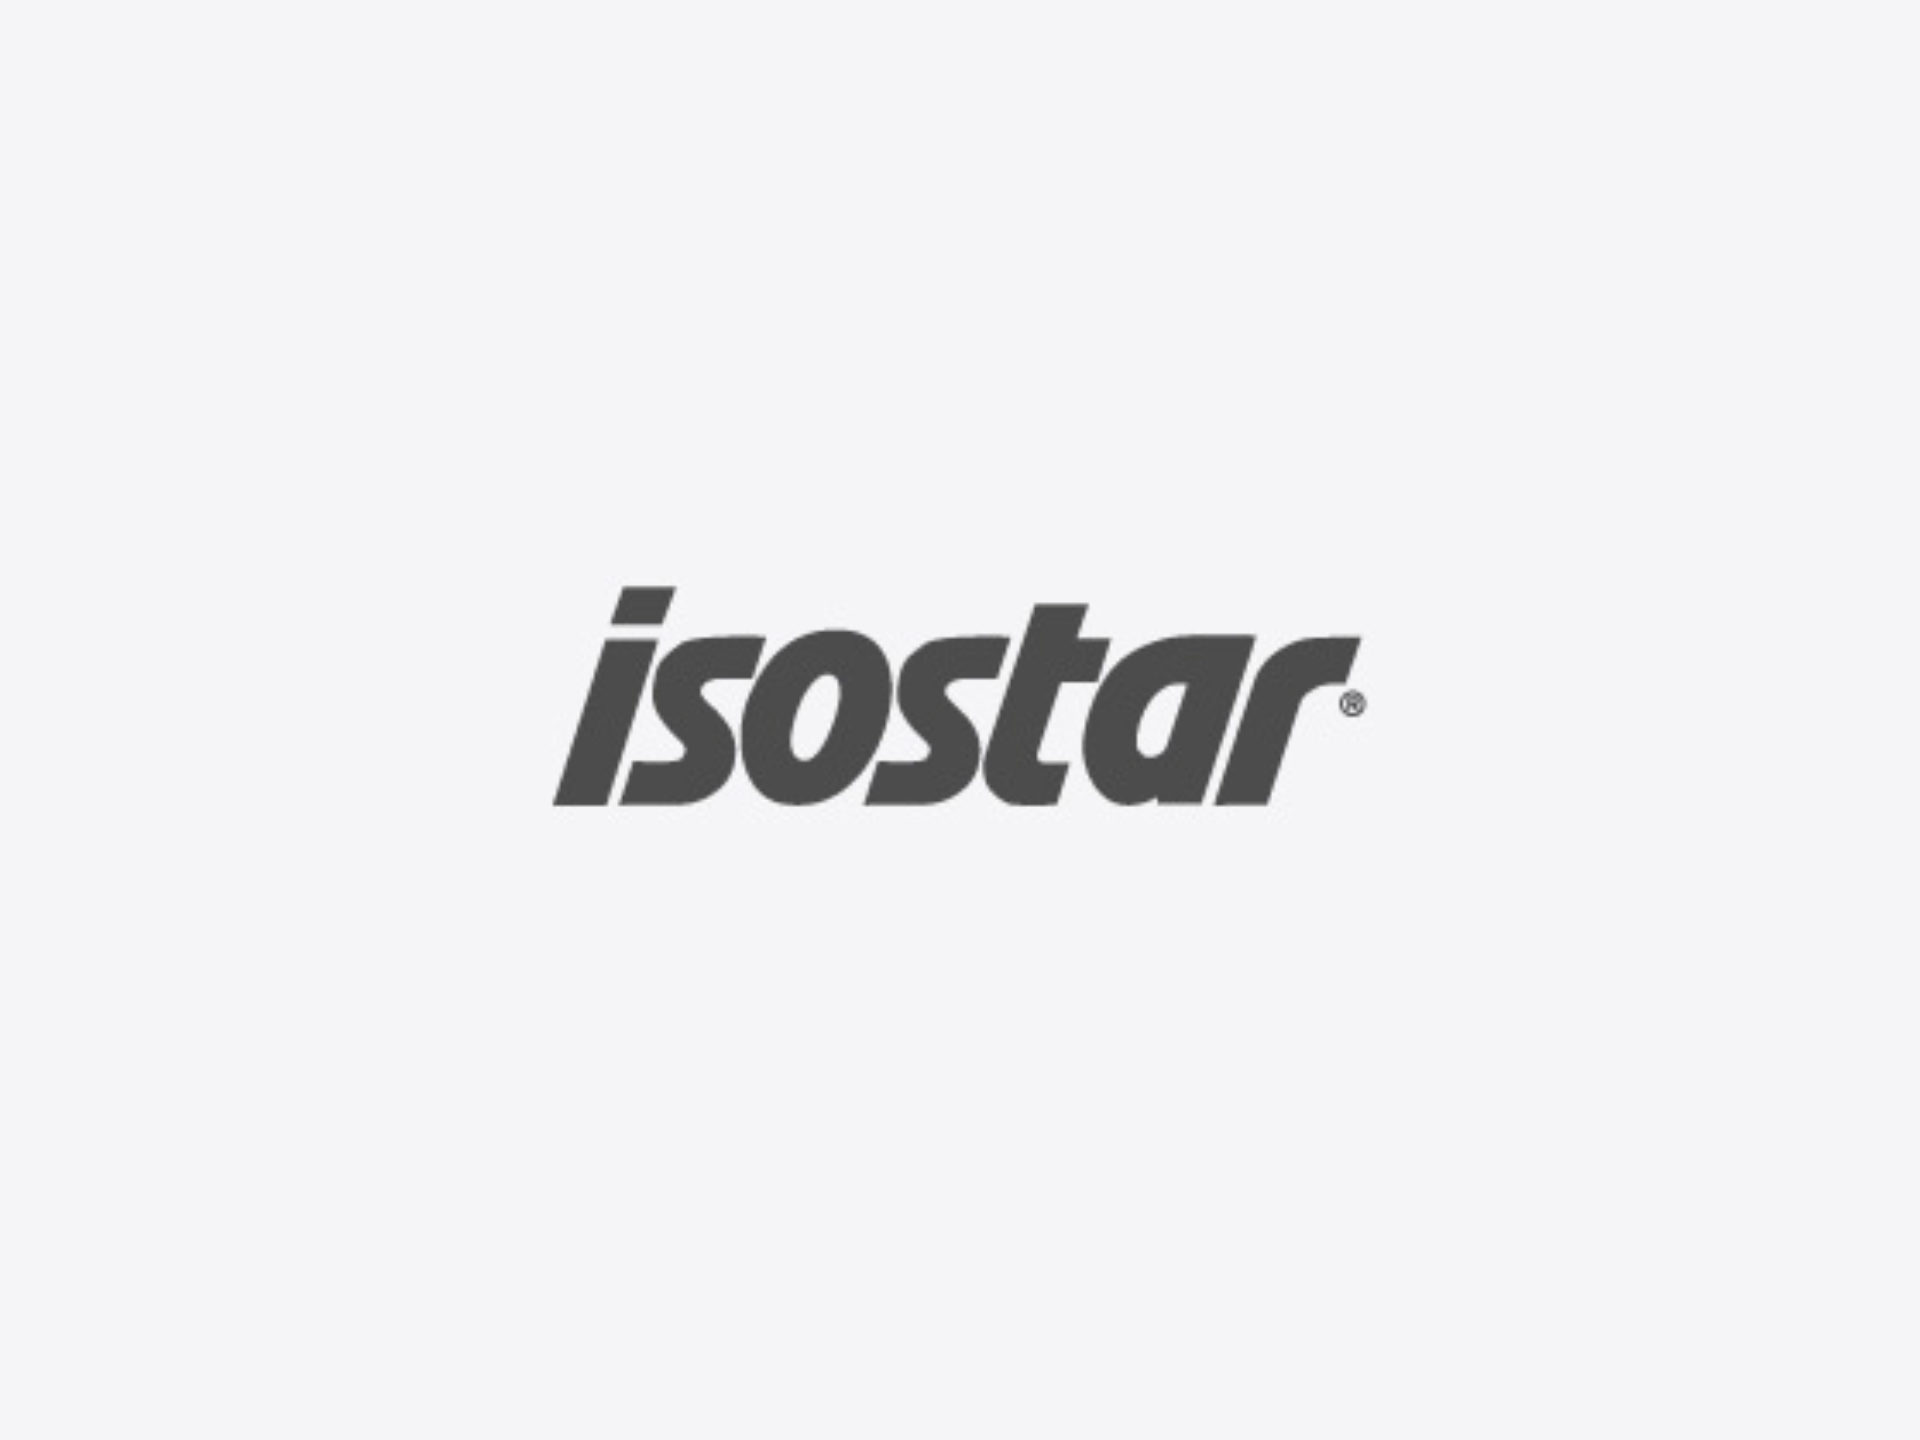 Isostar Logo